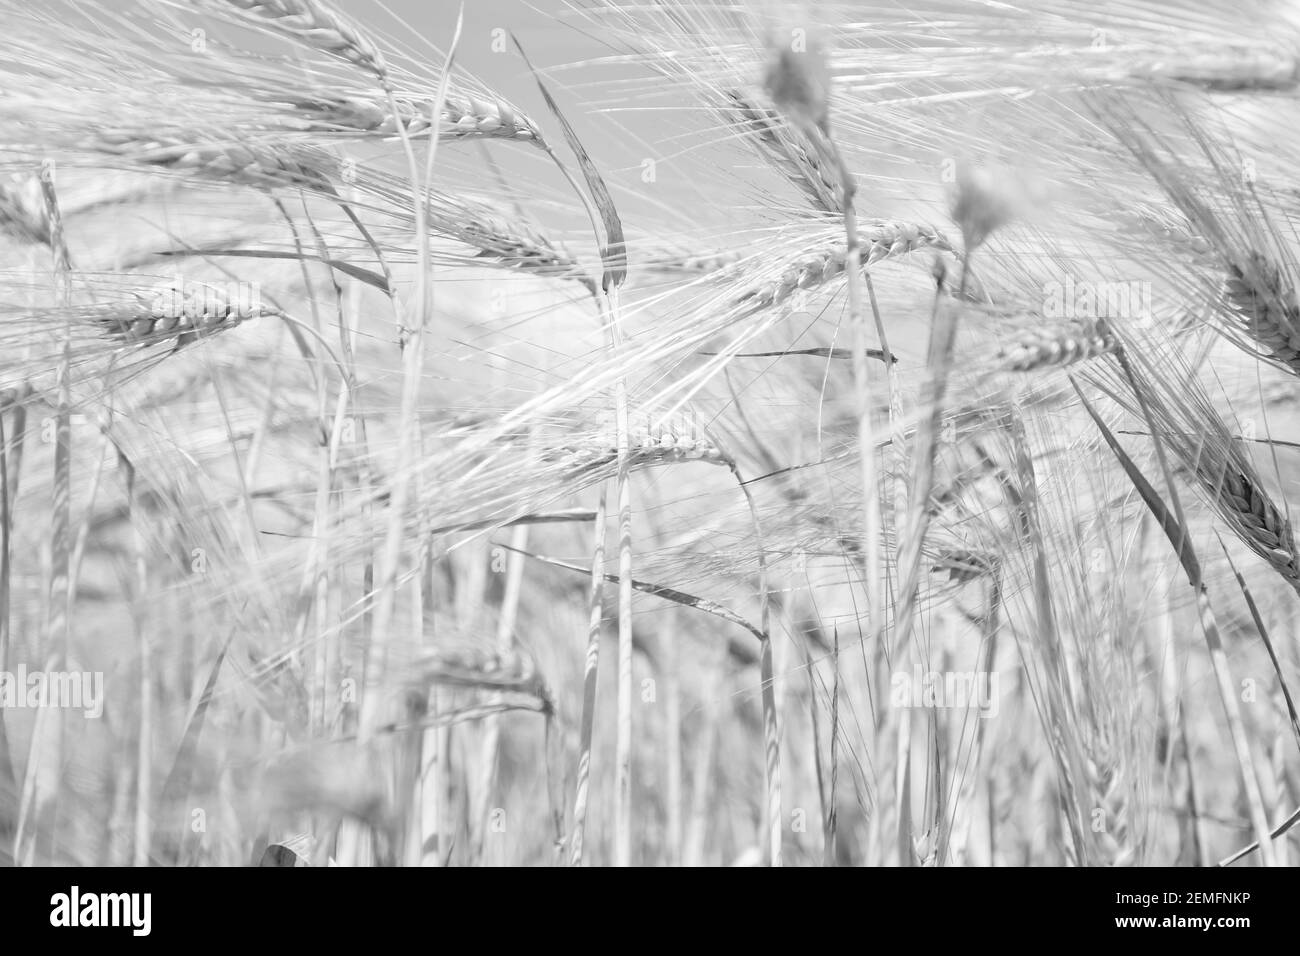 Nero e bianco basso fondo chiave Woth molti guglie di grano, agricoltura e alimentare concetto di coltivazione Foto Stock